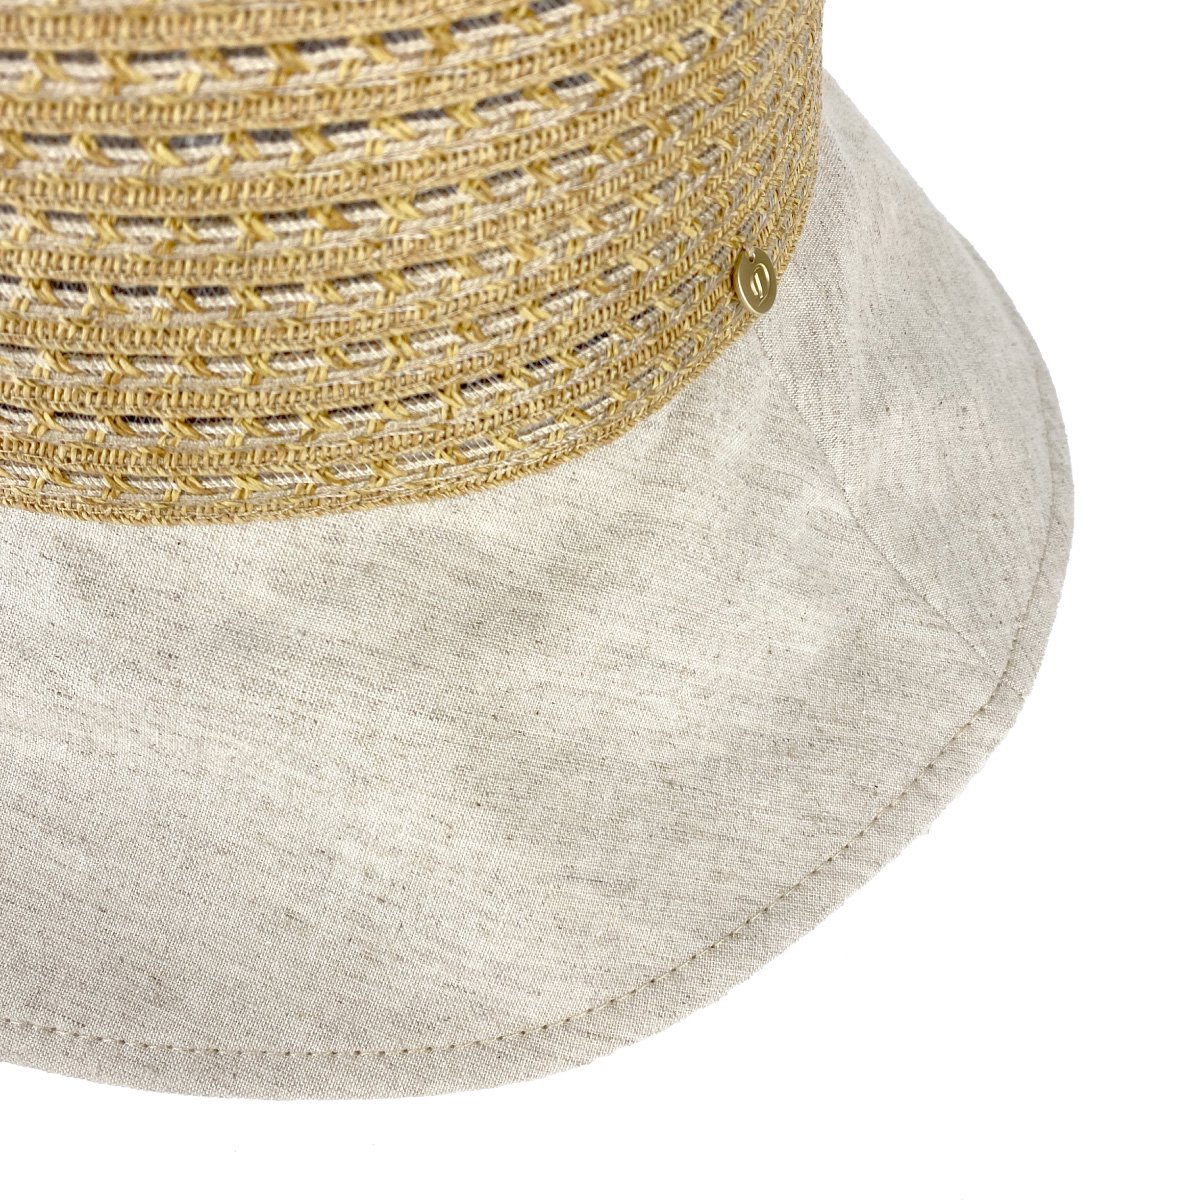 Linen Braid Hat